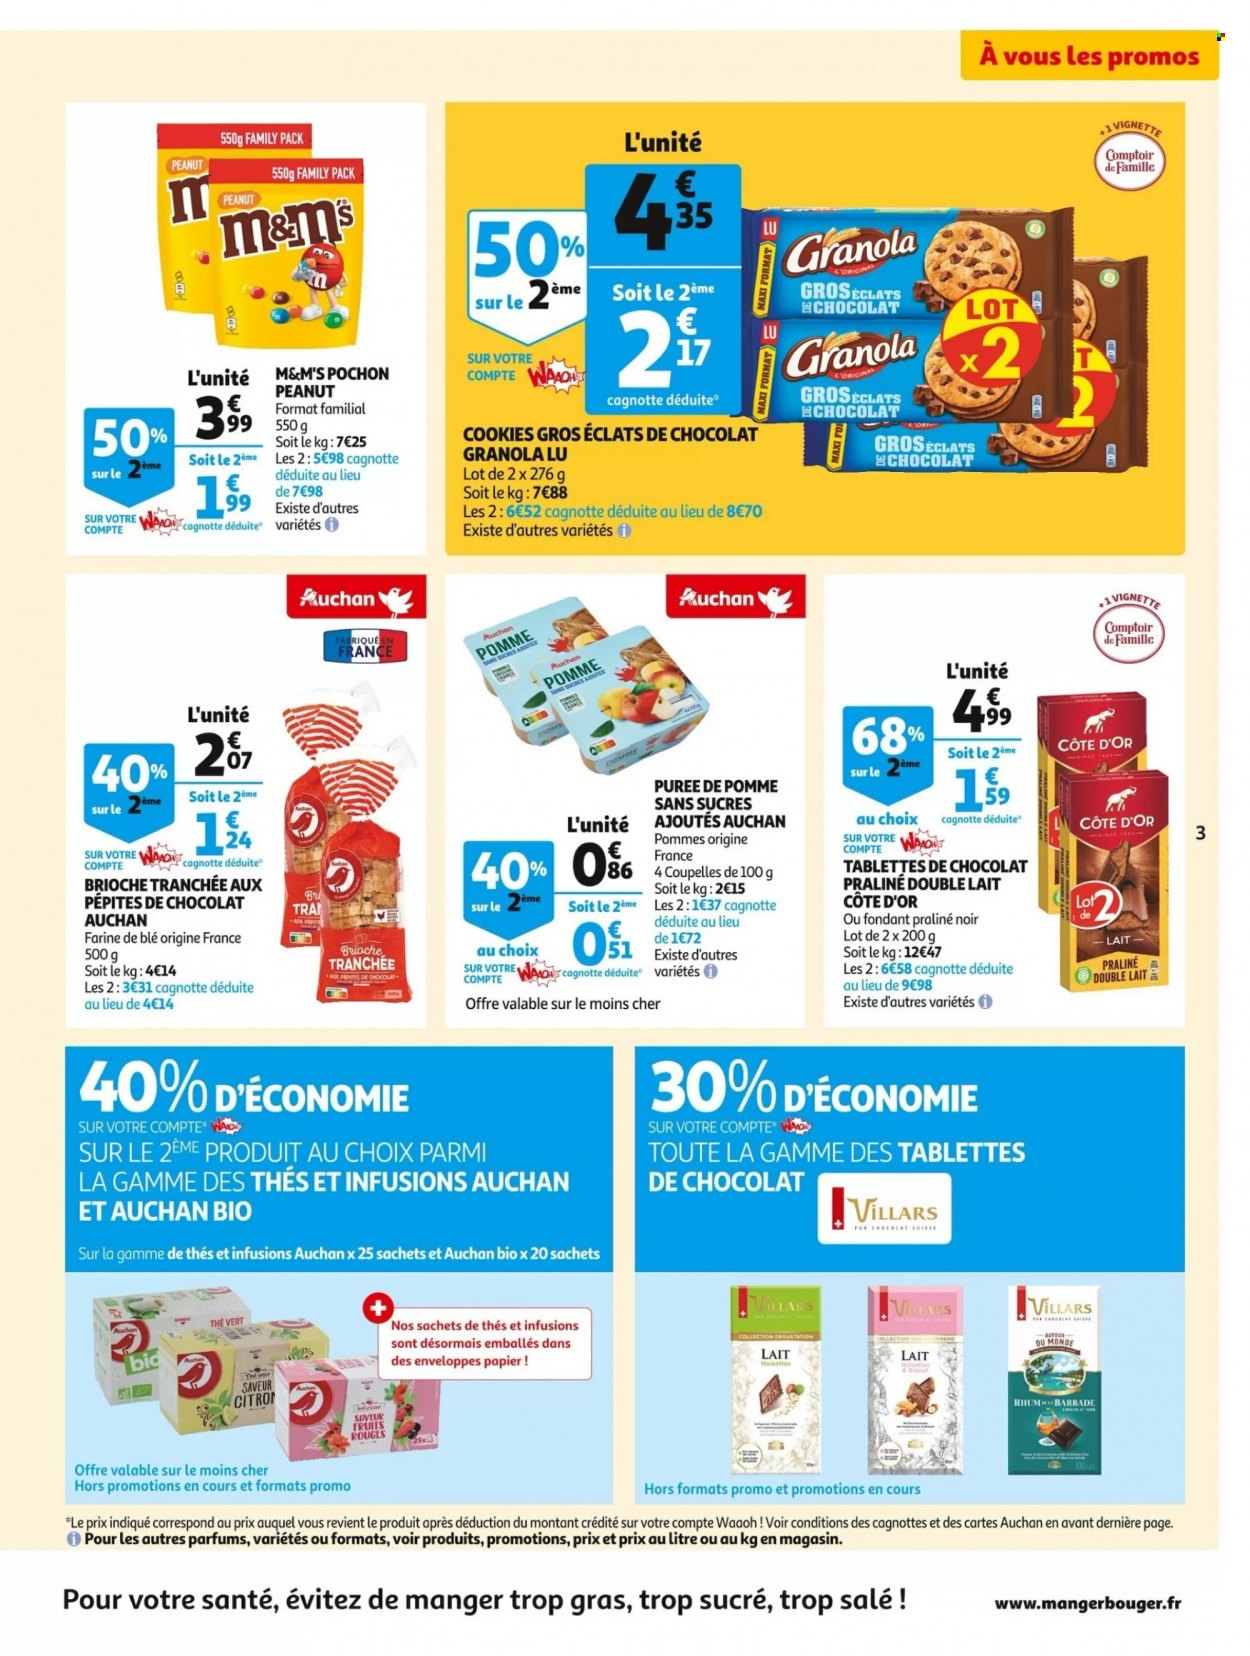 thumbnail - Catalogue Auchan - 30/11/2022 - 06/12/2022 - Produits soldés - alcool, brioche, granola, M&M's, pralinés, cookies, Côte d'Or, LU, thé vert, rhum, coupelle. Page 3.